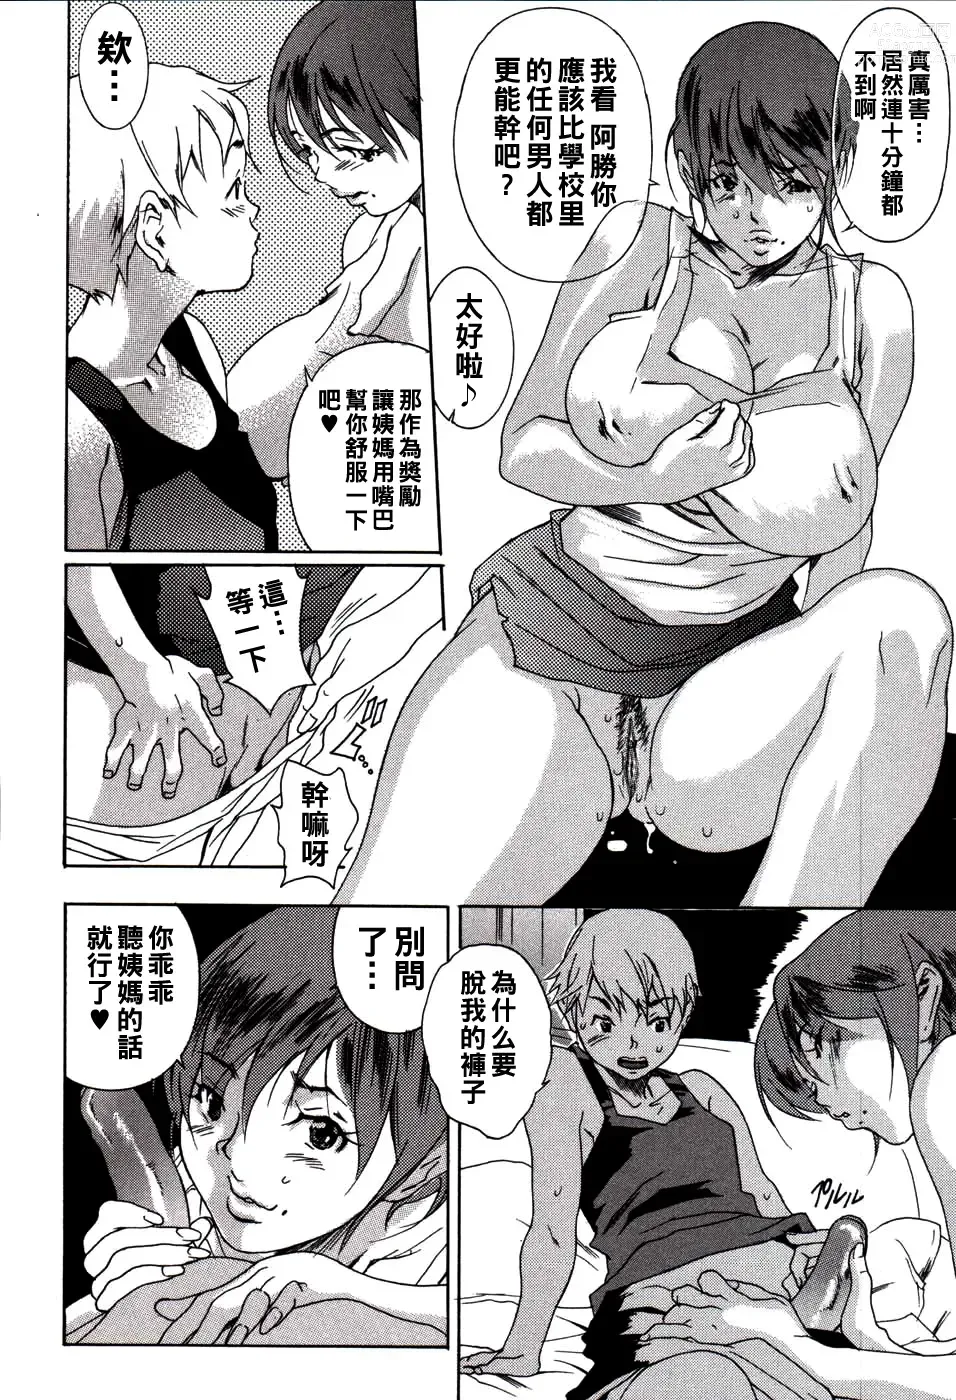 Page 4 of manga Kareshi no Jijou